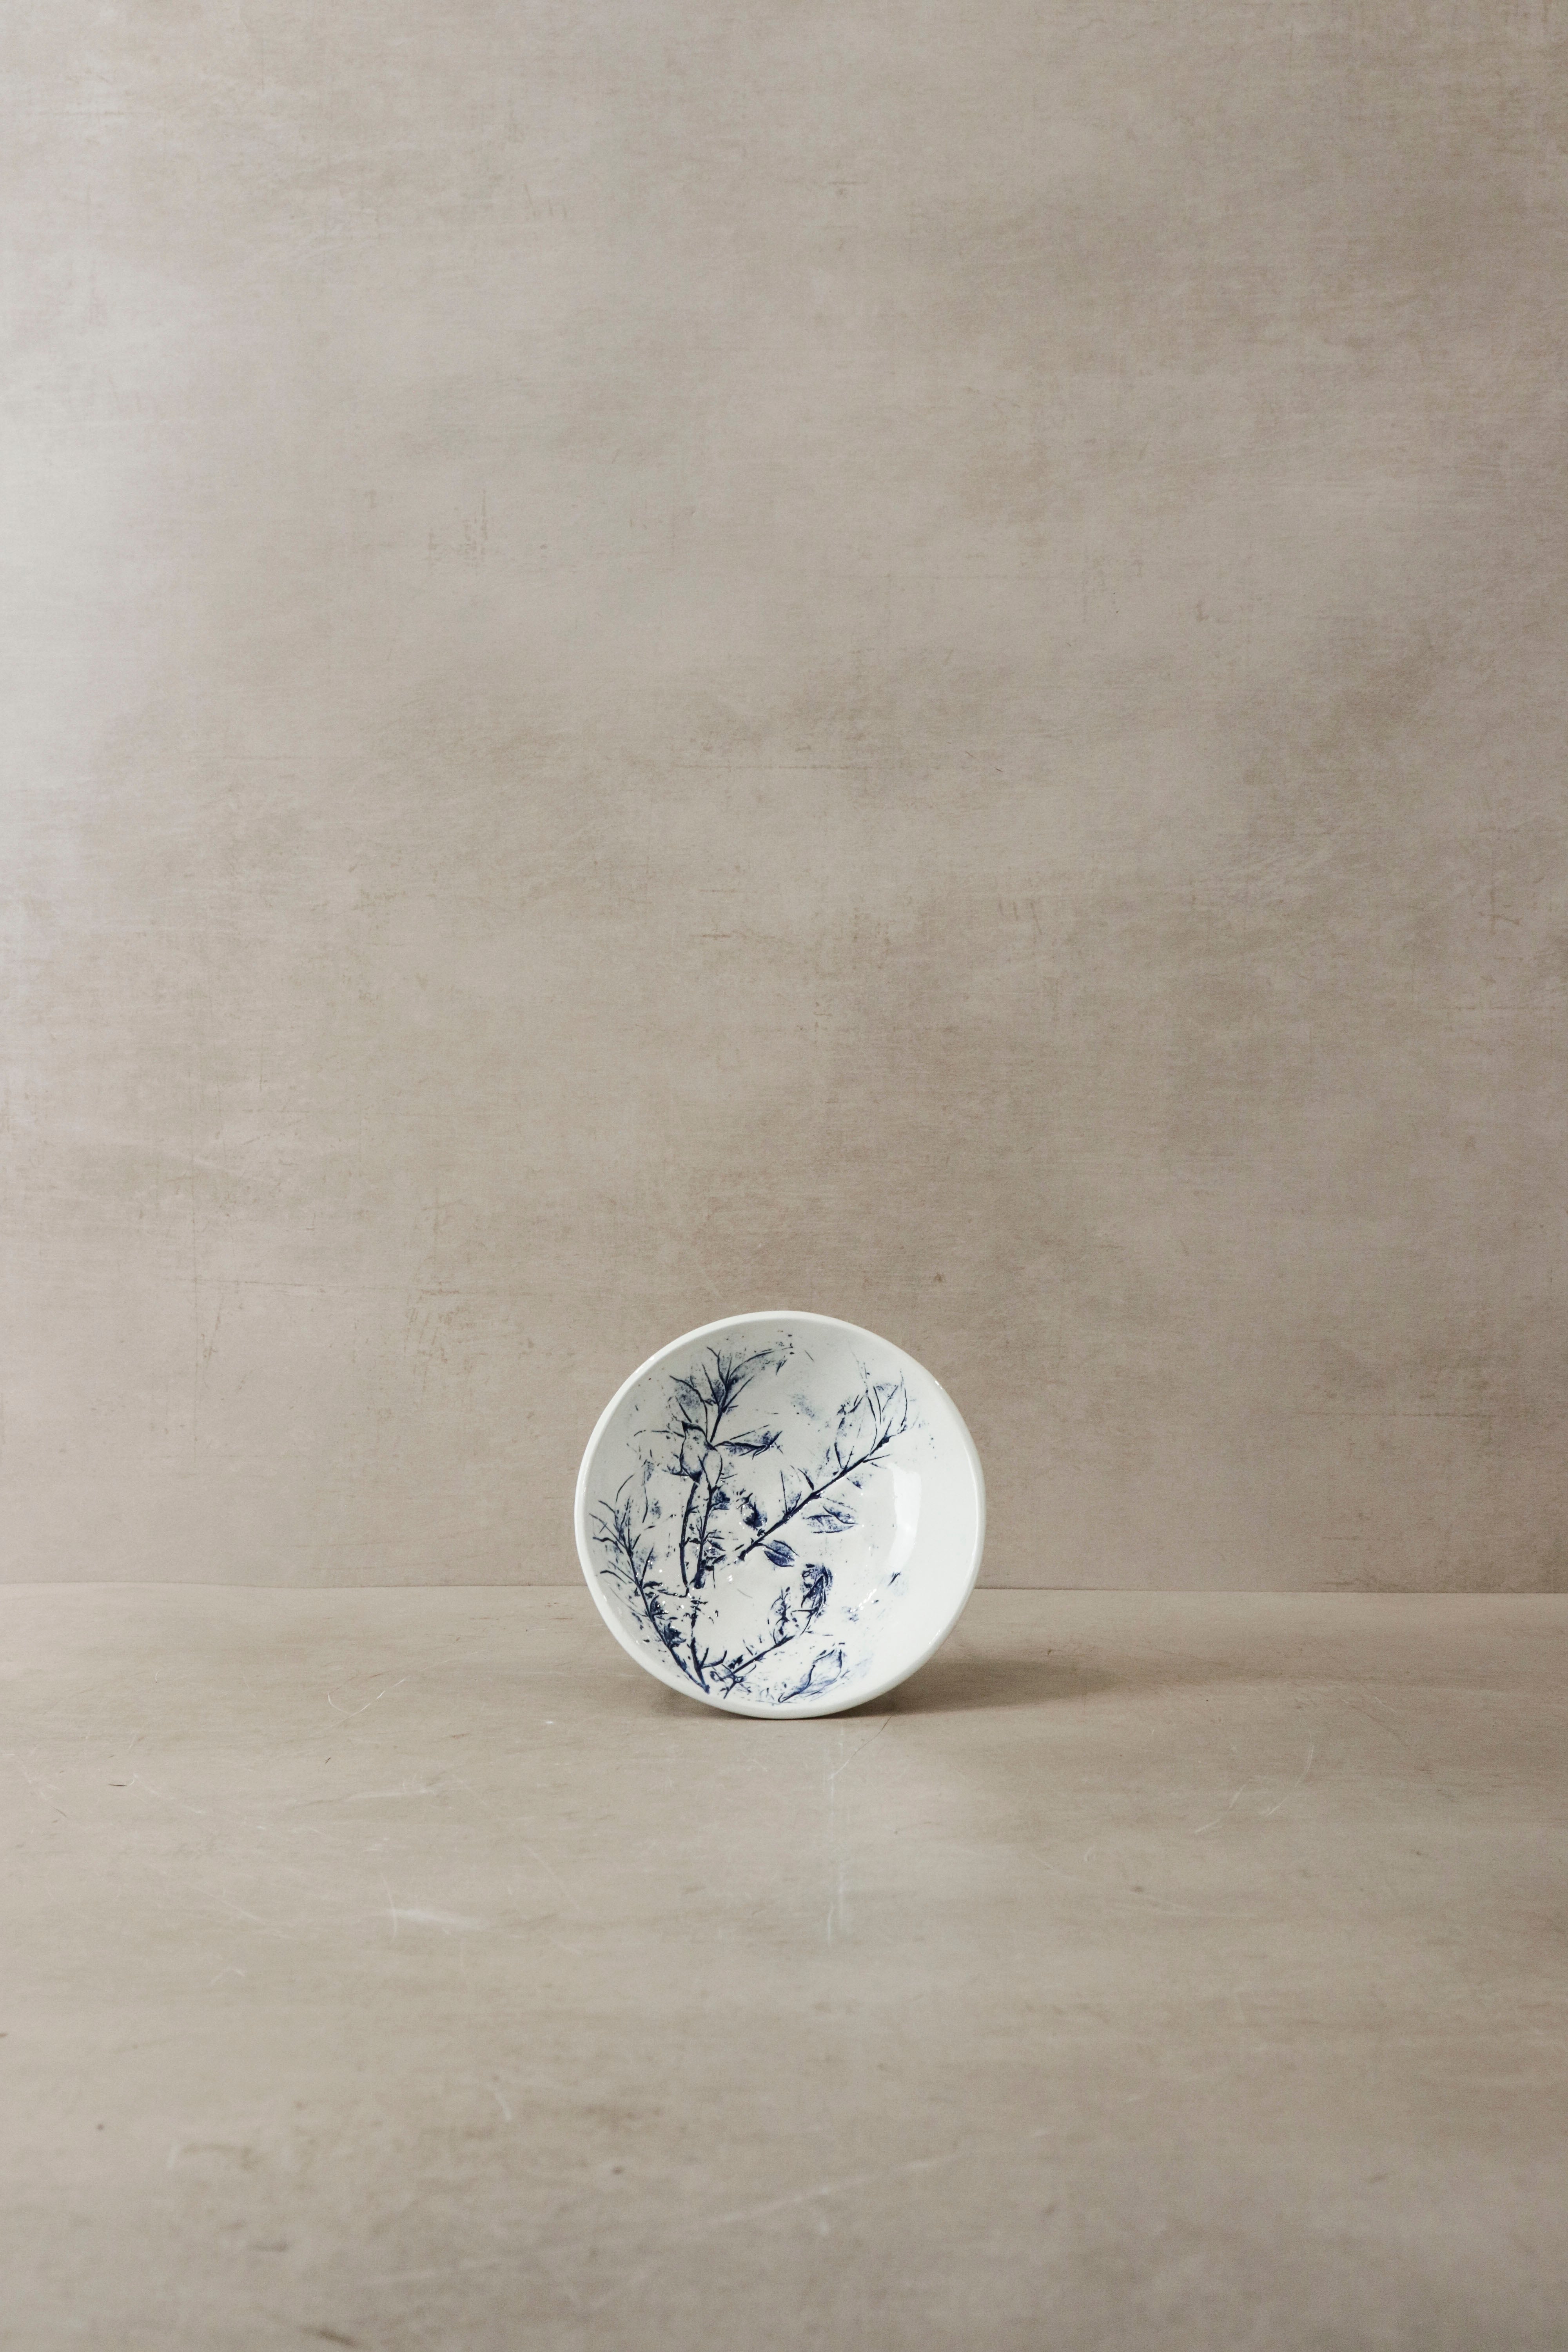 botanicalboysuk Cobalt Blue Fynbos Ceramic Plate - N°10